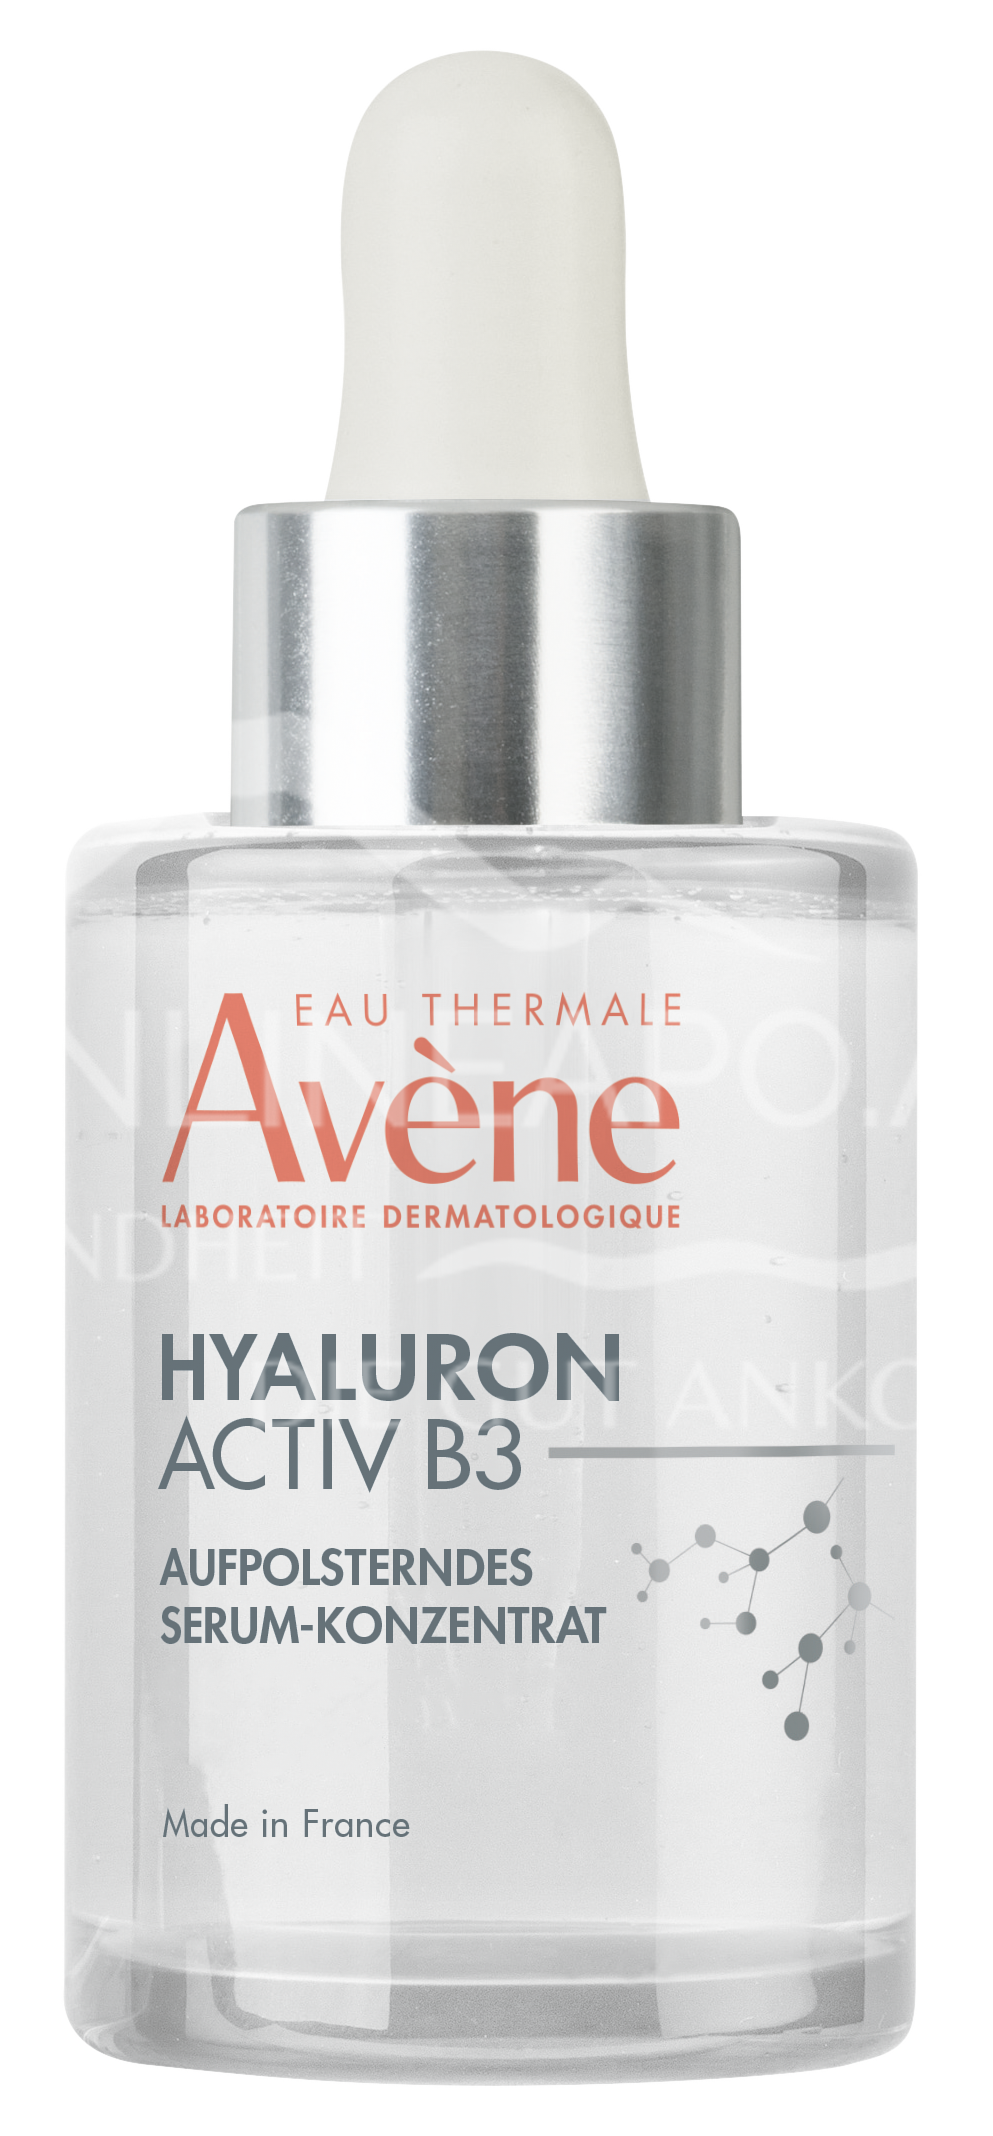 Avene Hyaluron Activ B3 Aufpolsterndes Serum-Konzentrat